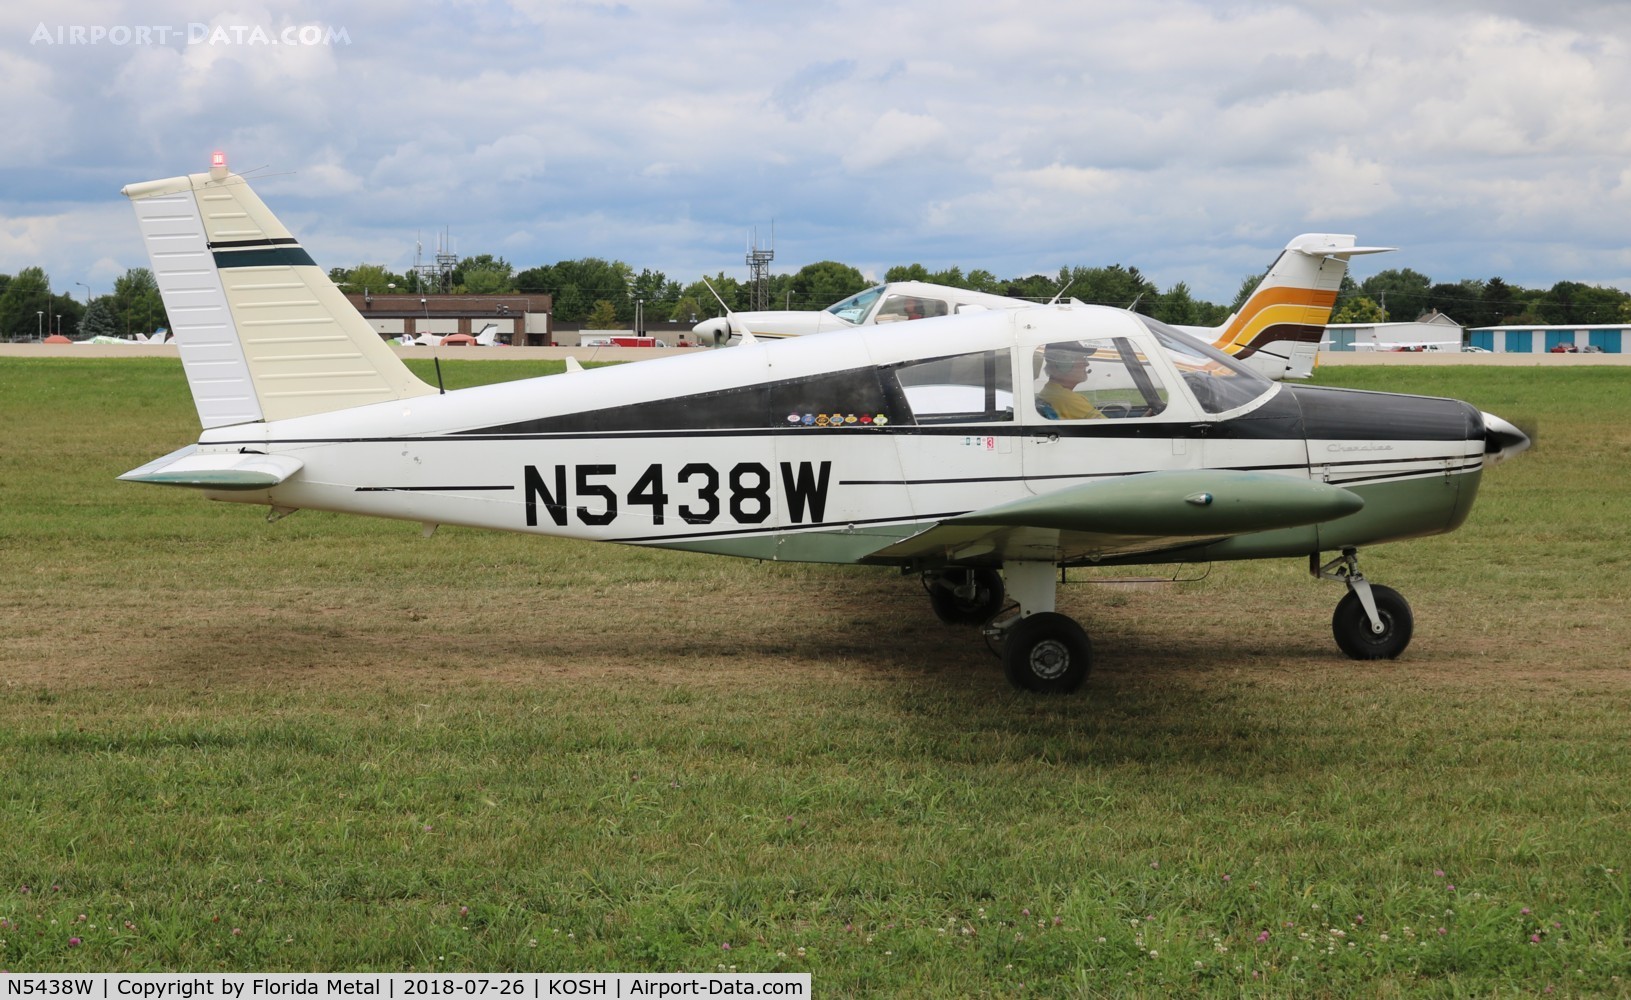 N5438W, 1962 Piper PA-28-160 Cherokee C/N 28-514, PA-28-160